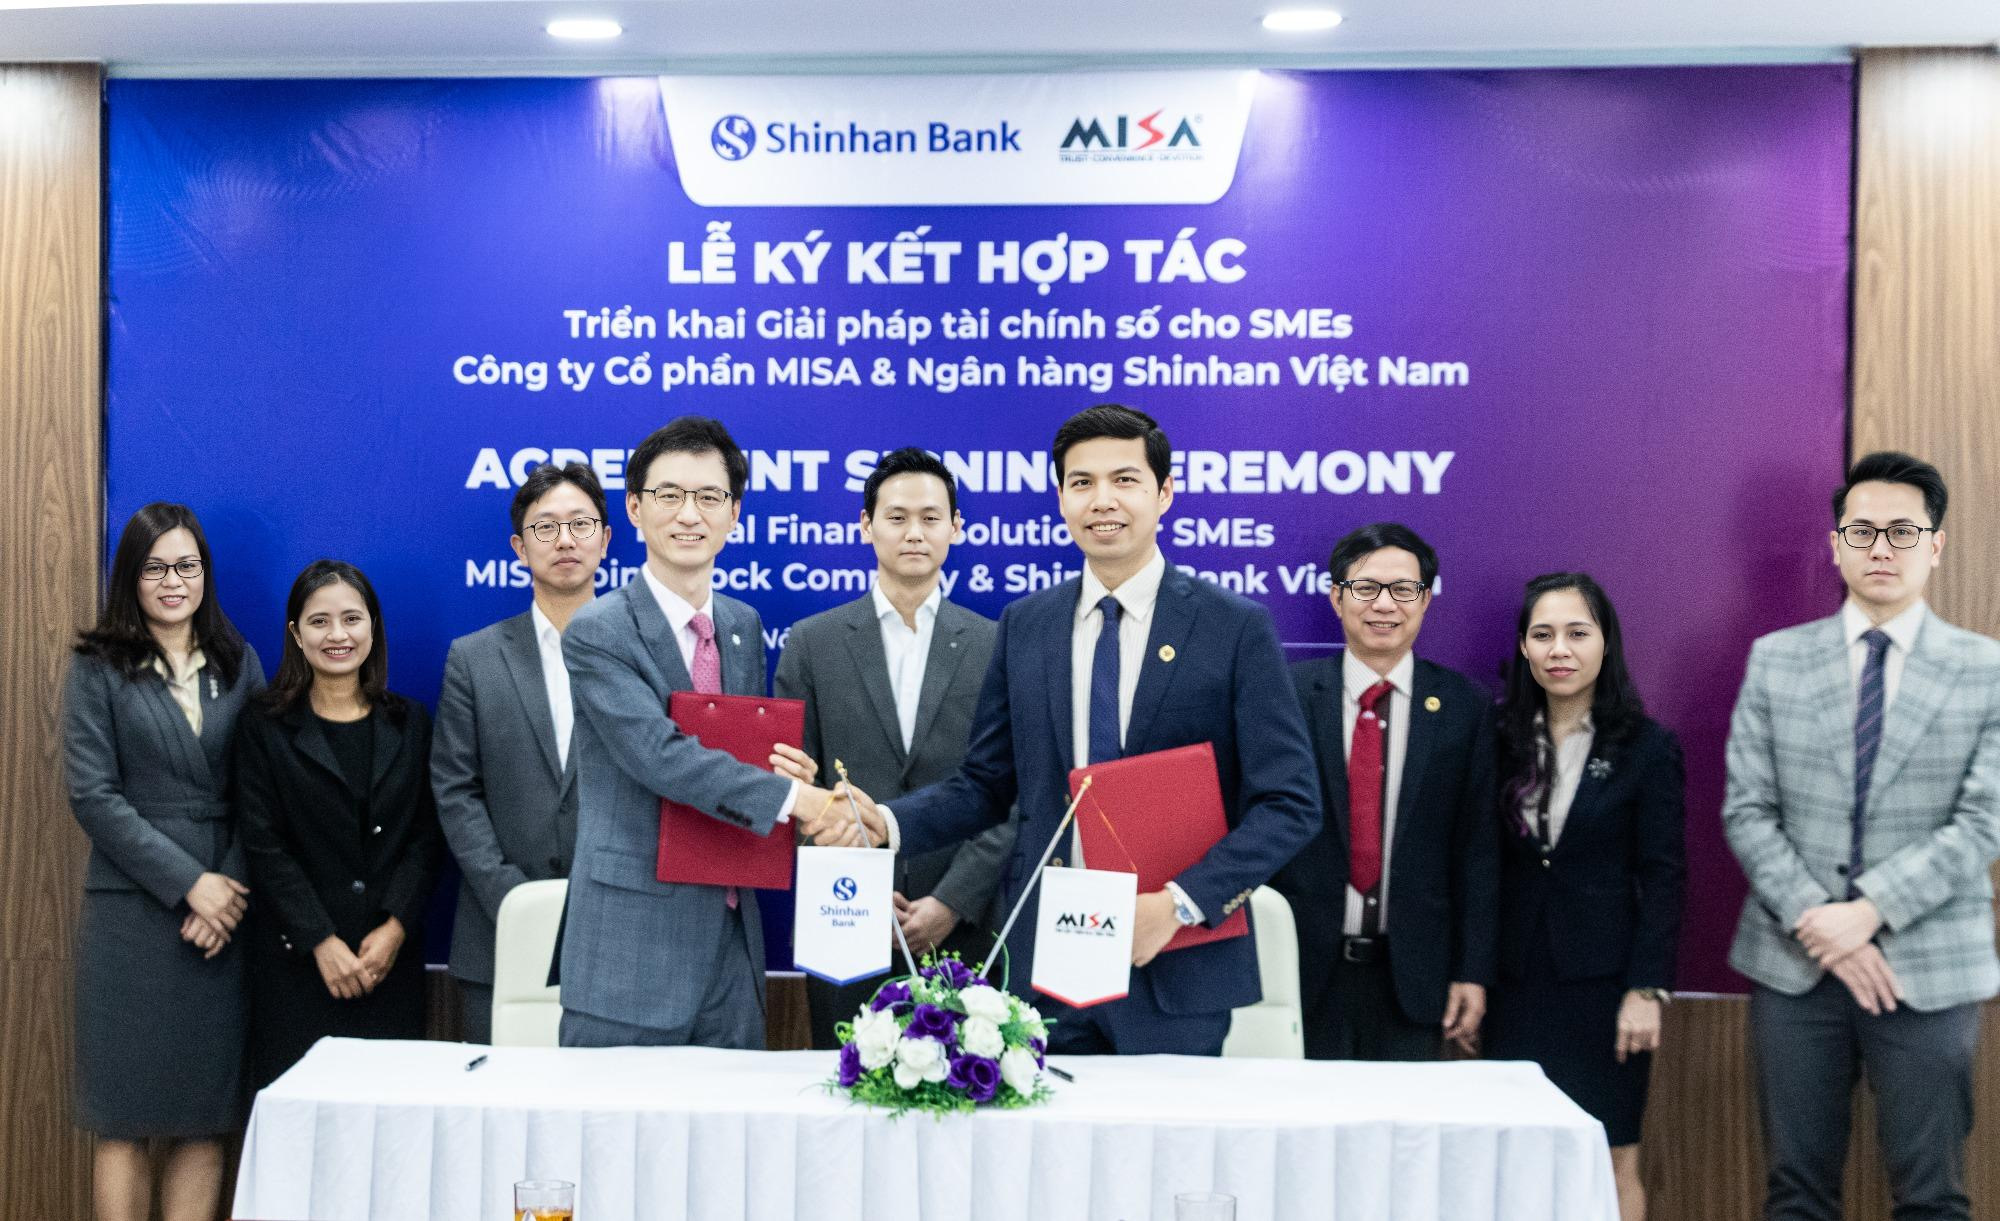 Ngân hàng Shinhan hợp tác cùng MISA – Gỡ khó bài toán tiếp cận vốn tín dụng cho SMEs - Ảnh 1.